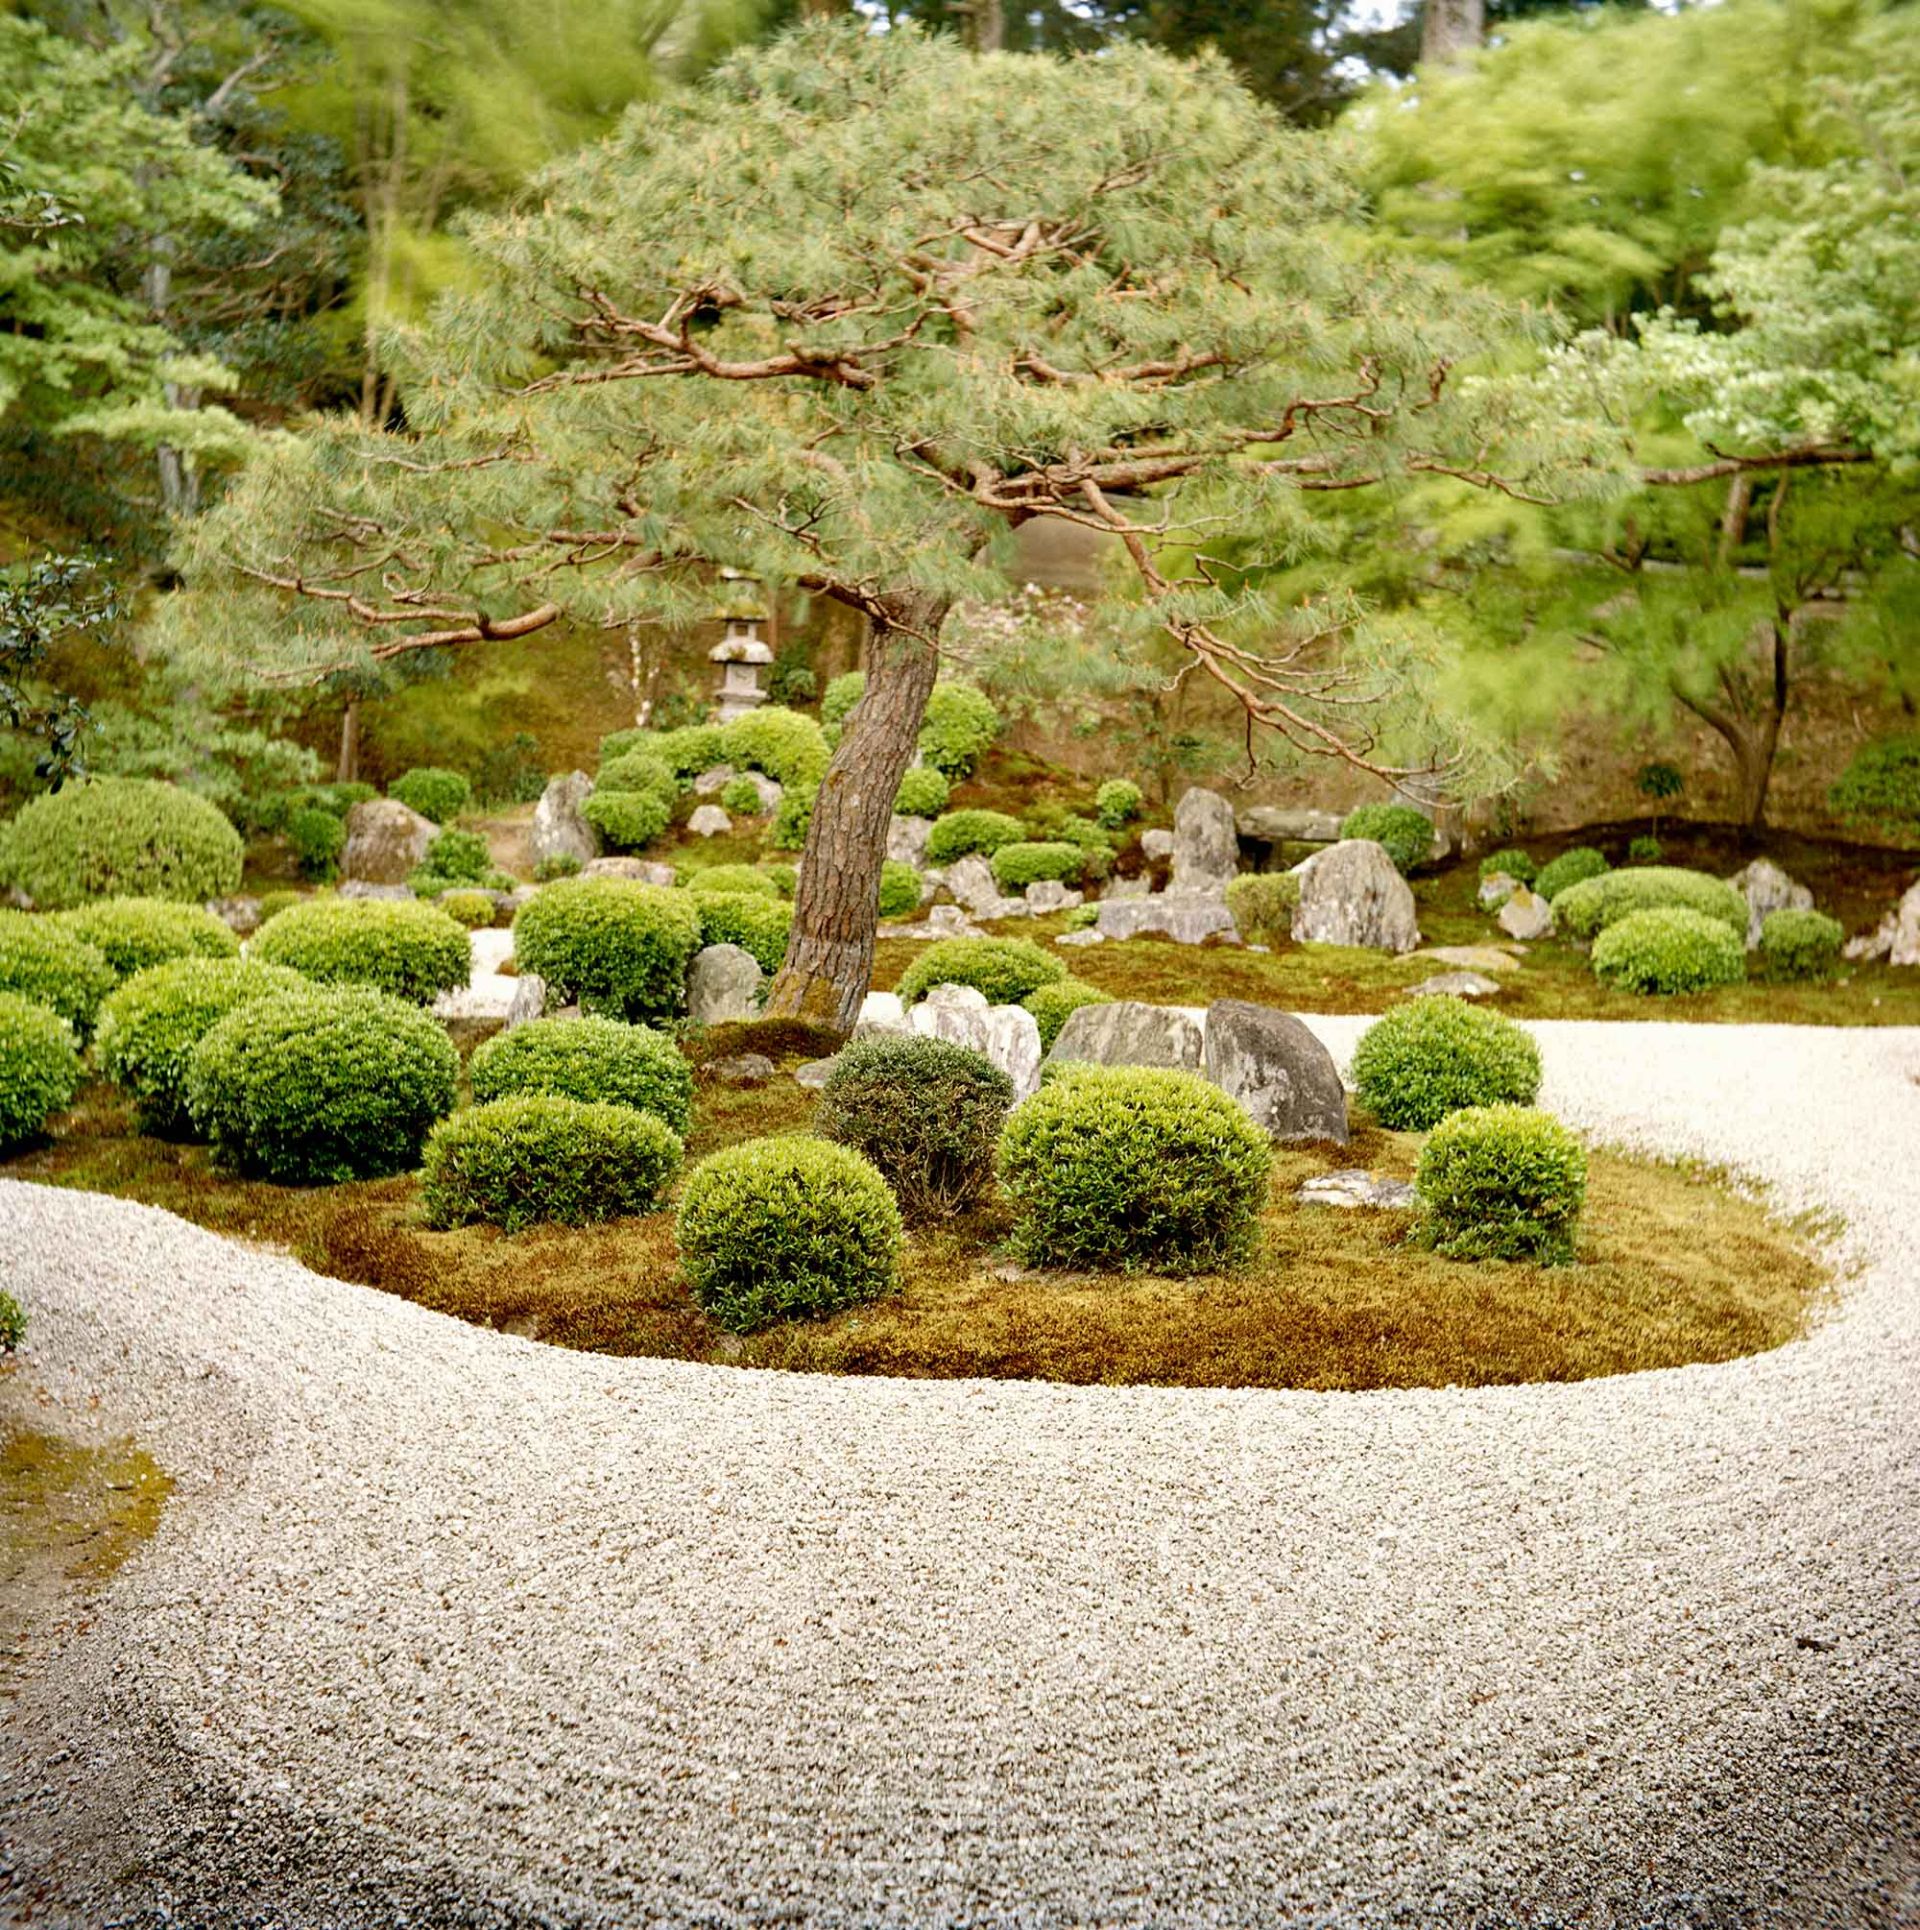 A Japanese Zen Garden